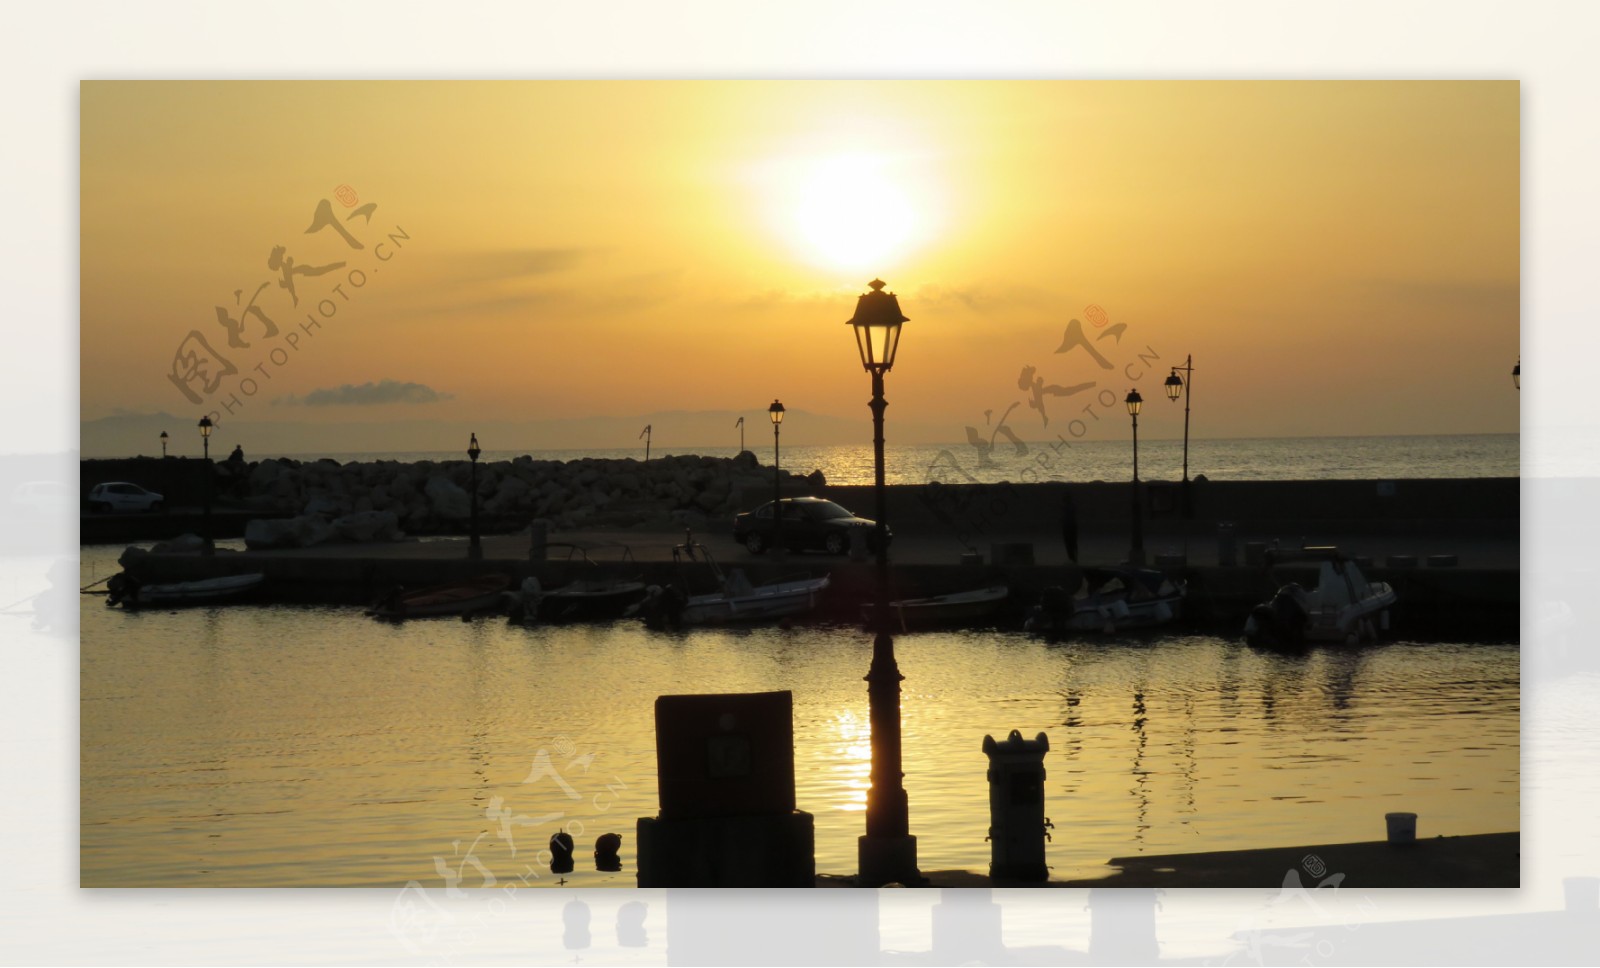 希腊海边夕阳高清图片